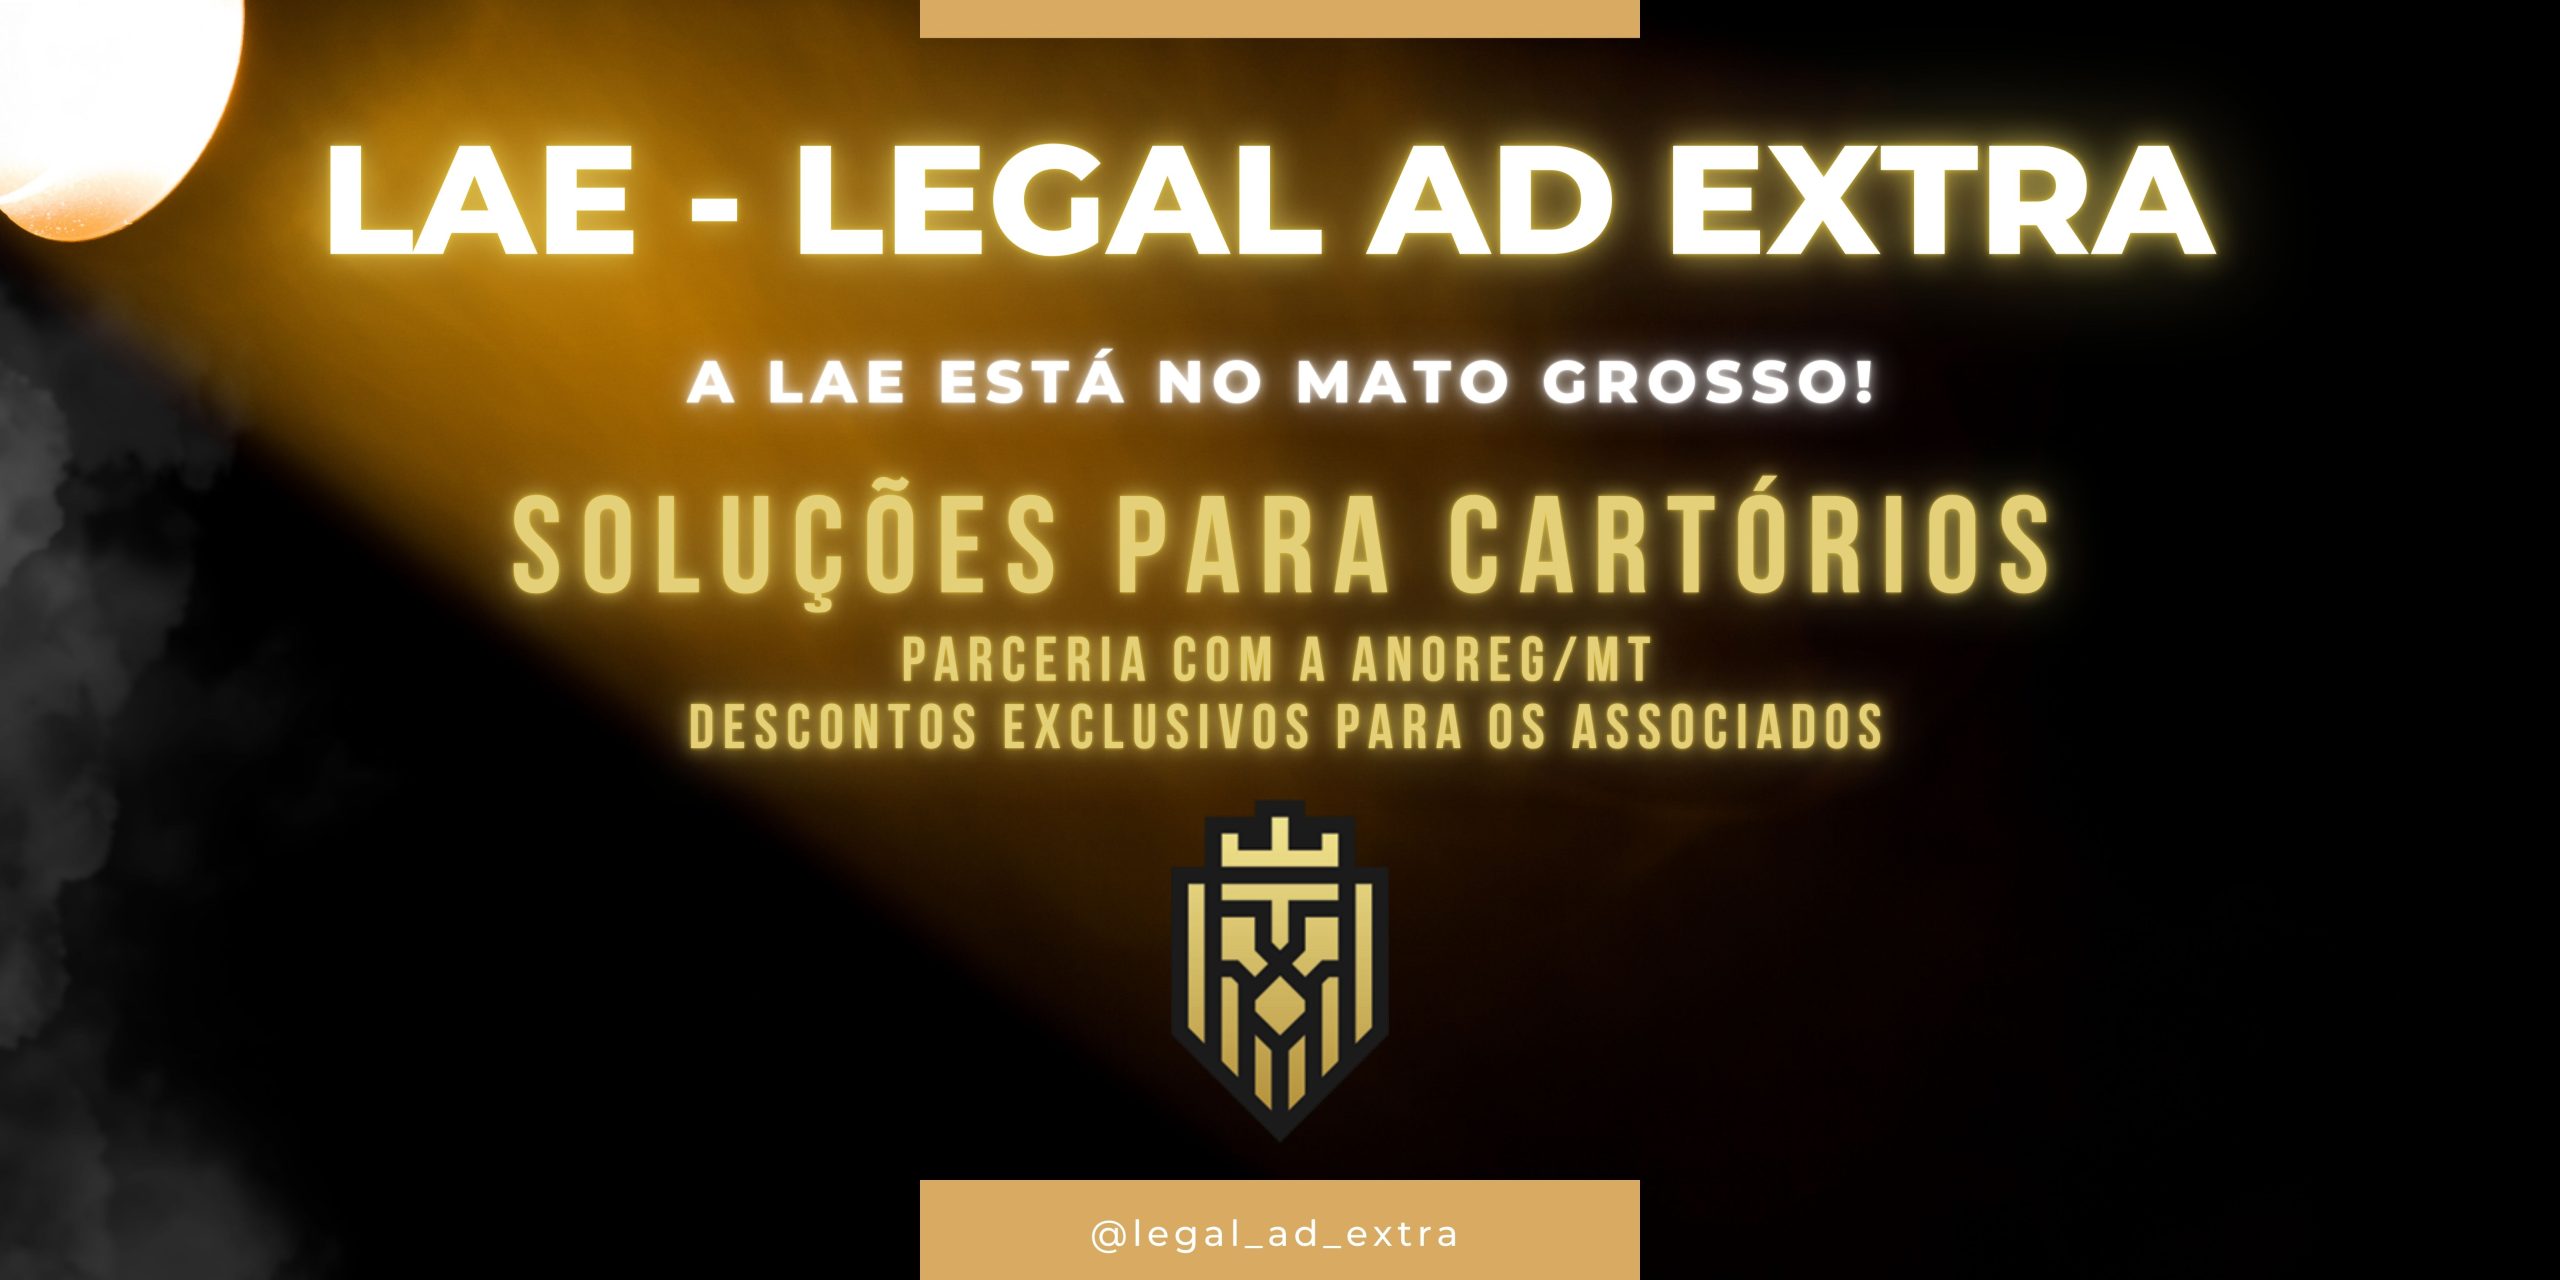 Legal Ad Extra Soluções para Cartório (LAE)